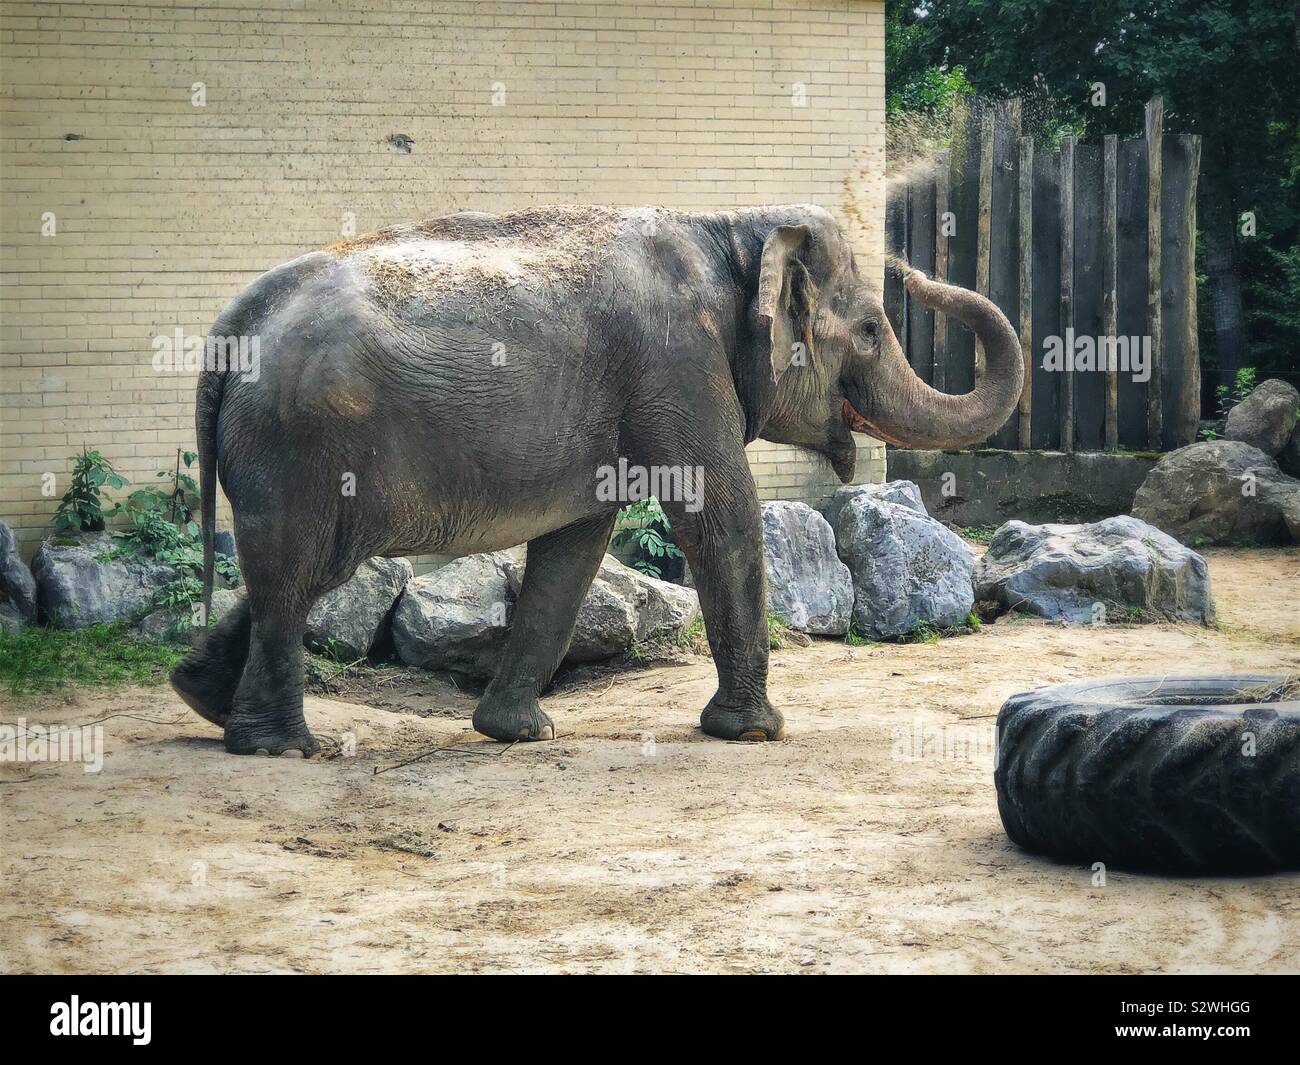 The Asian elephant (Elephas maximus) sand bathing at Ljubljana Zoo, Slovenia Stock Photo